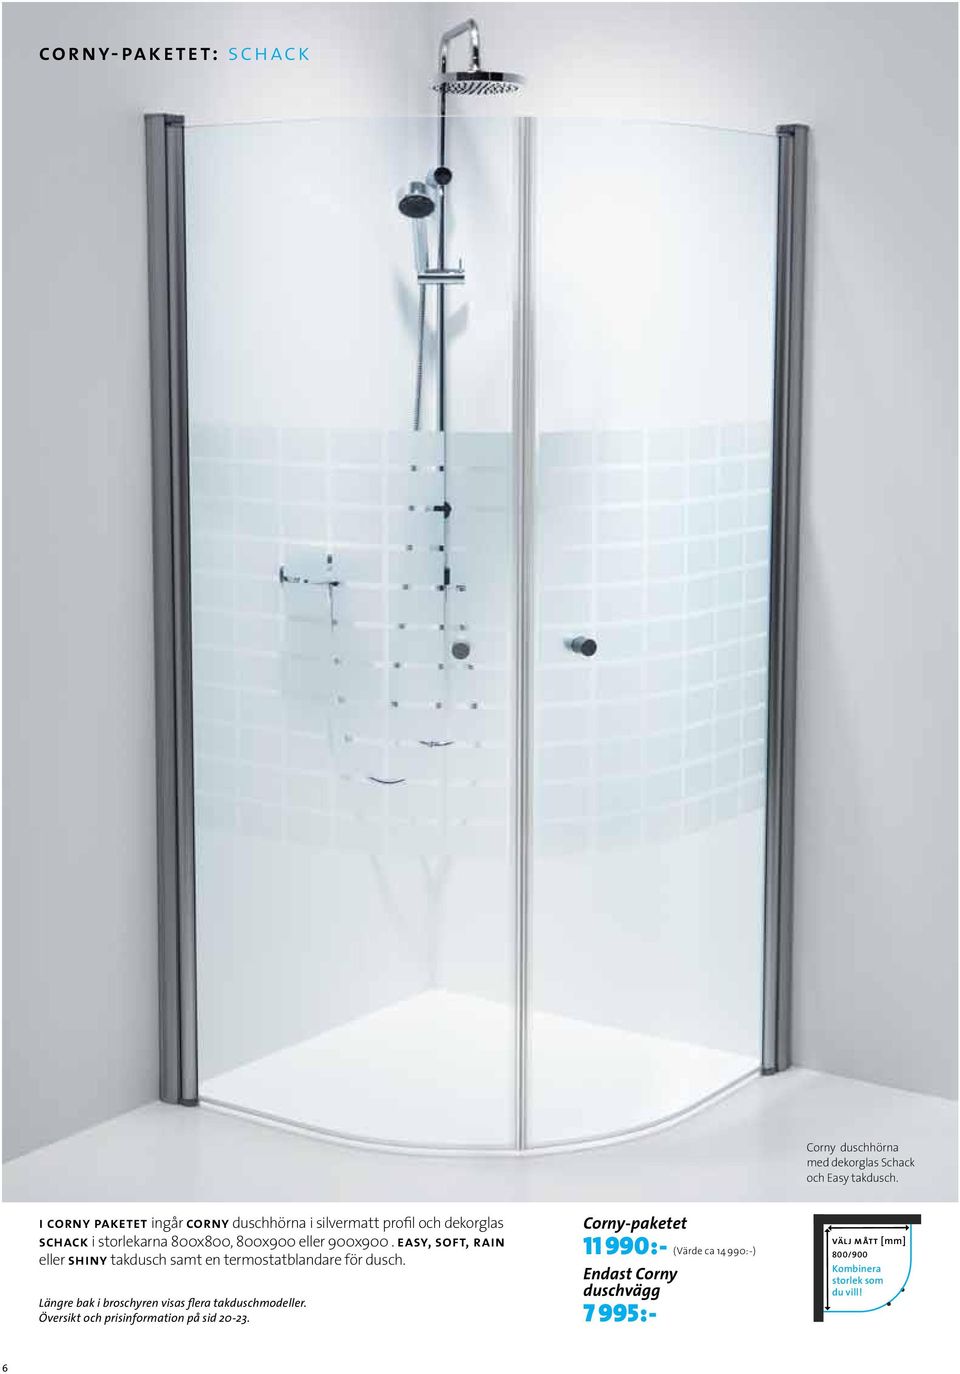 easy, soft, rain eller shiny takdusch samt en termostatblandare för dusch. Längre bak i broschyren visas flera takduschmodeller.